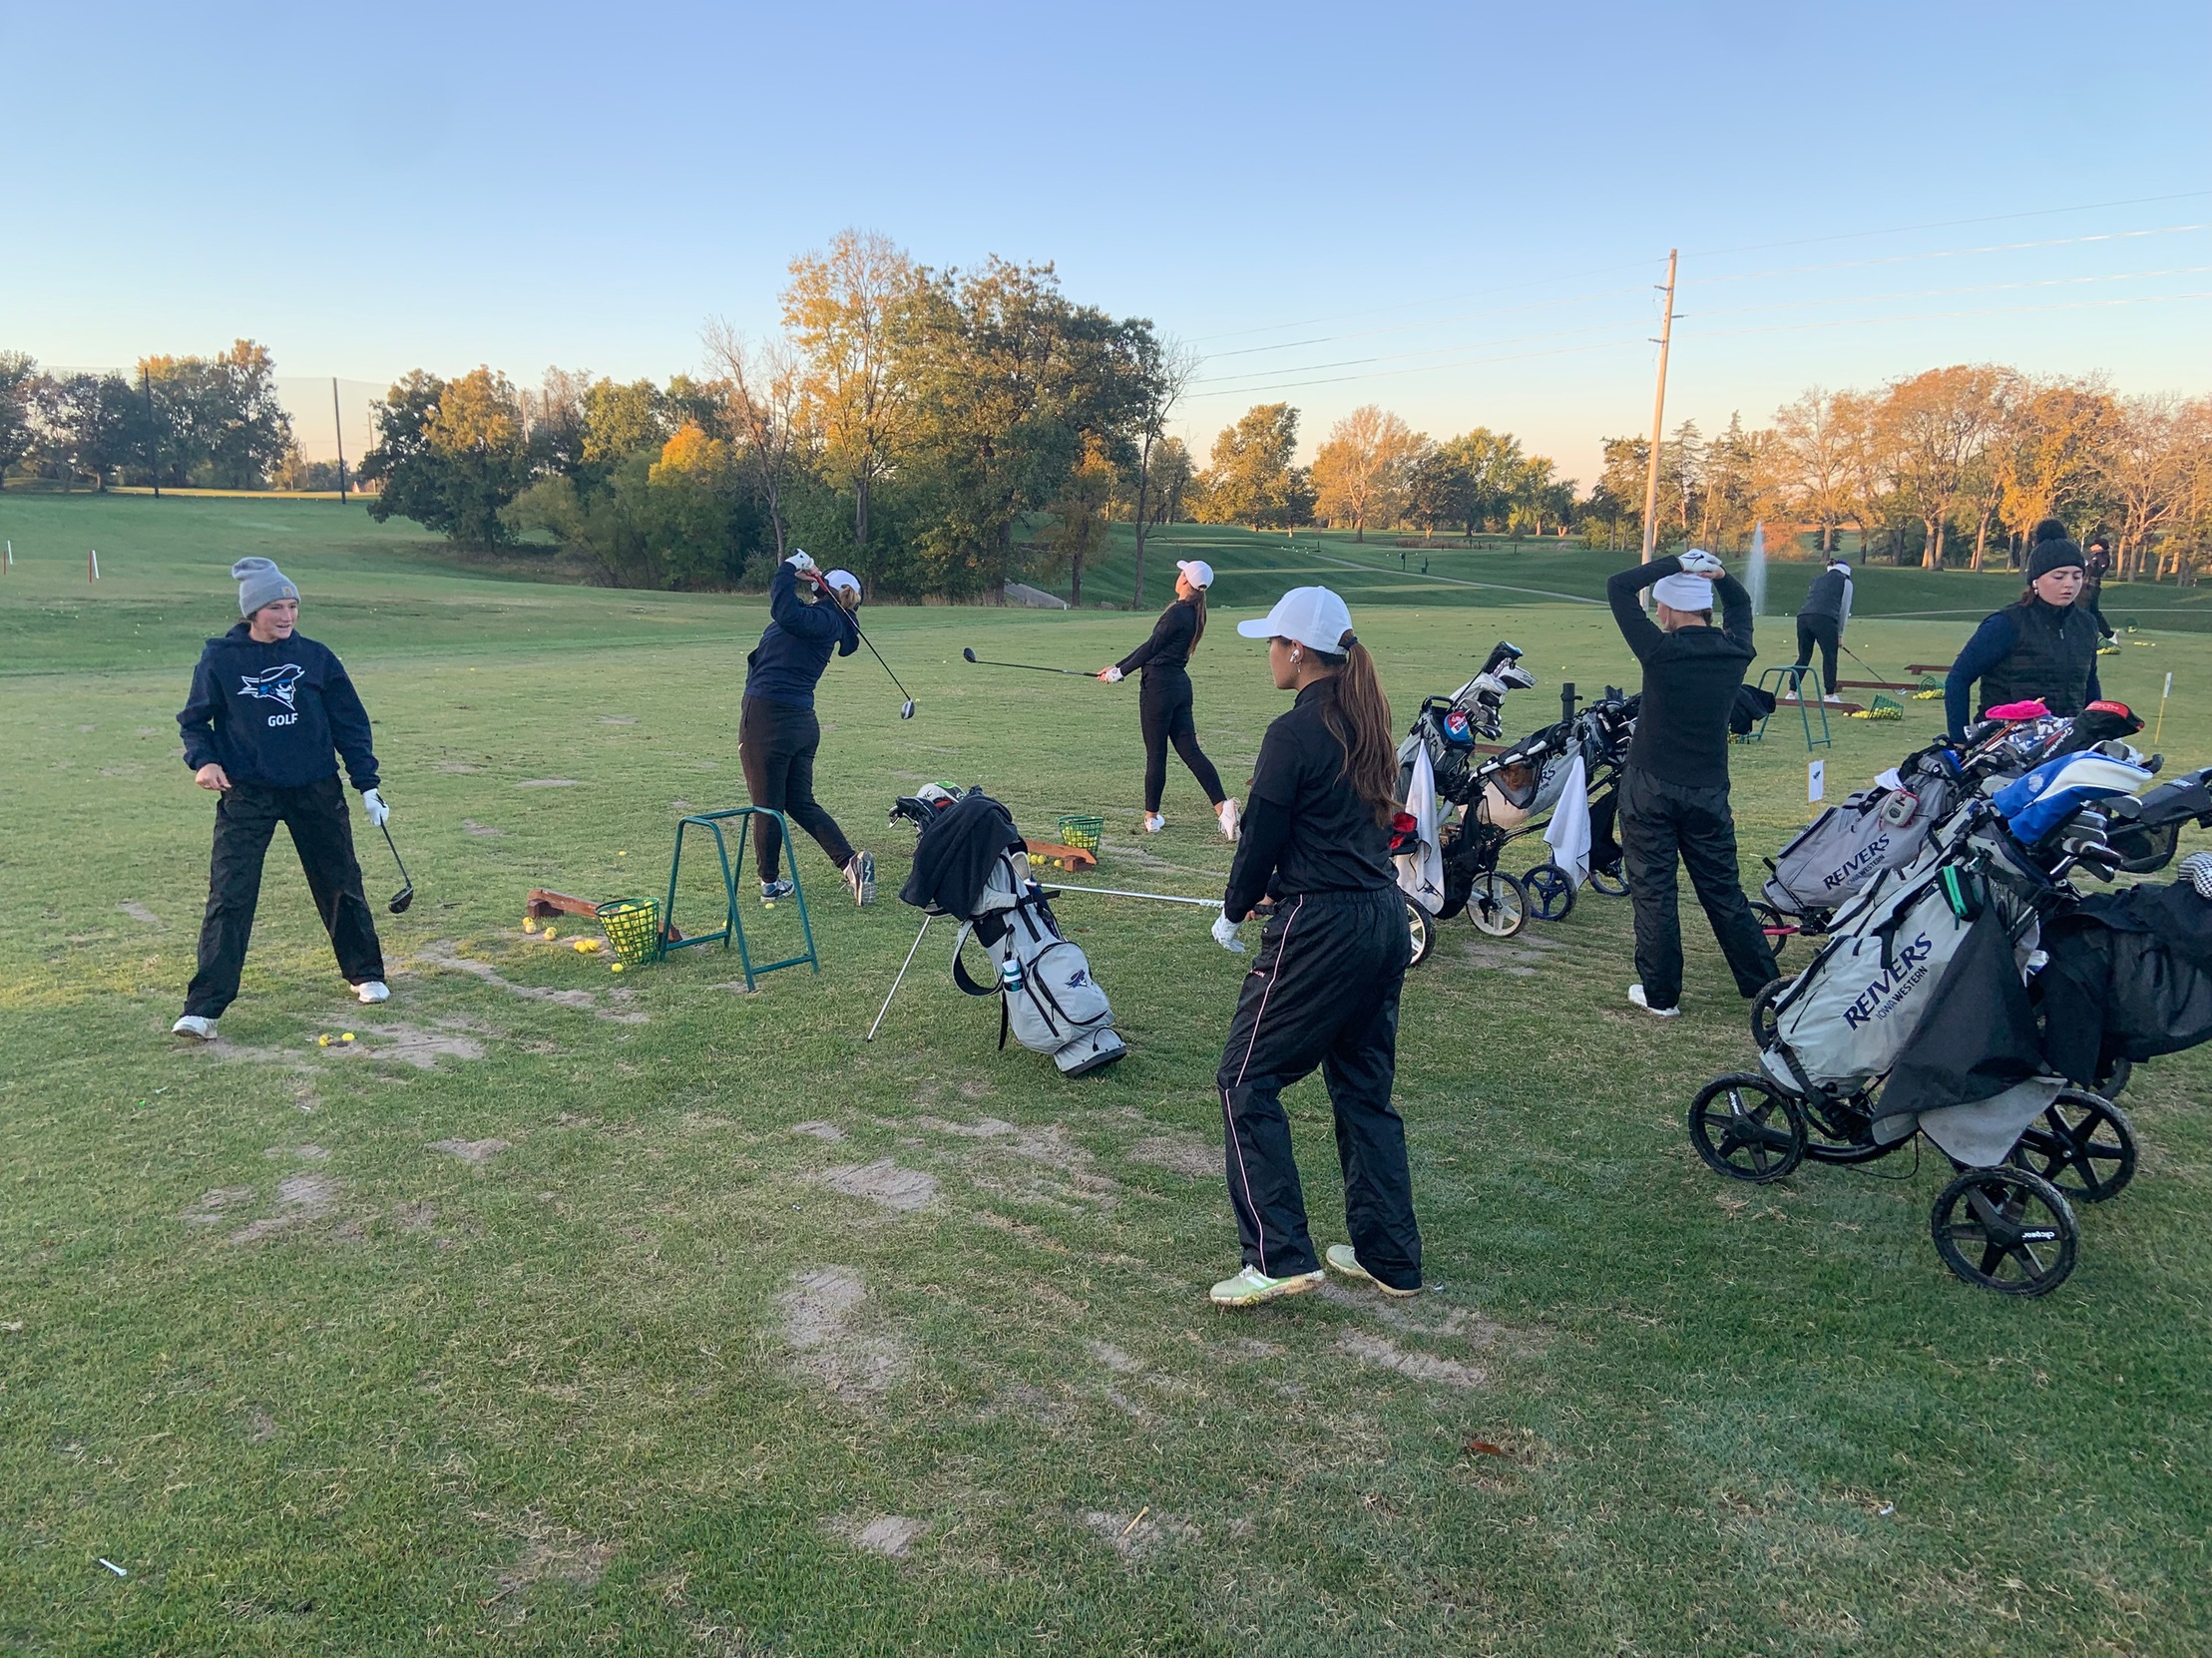 Women's Golf Team Completes Their Fall Season